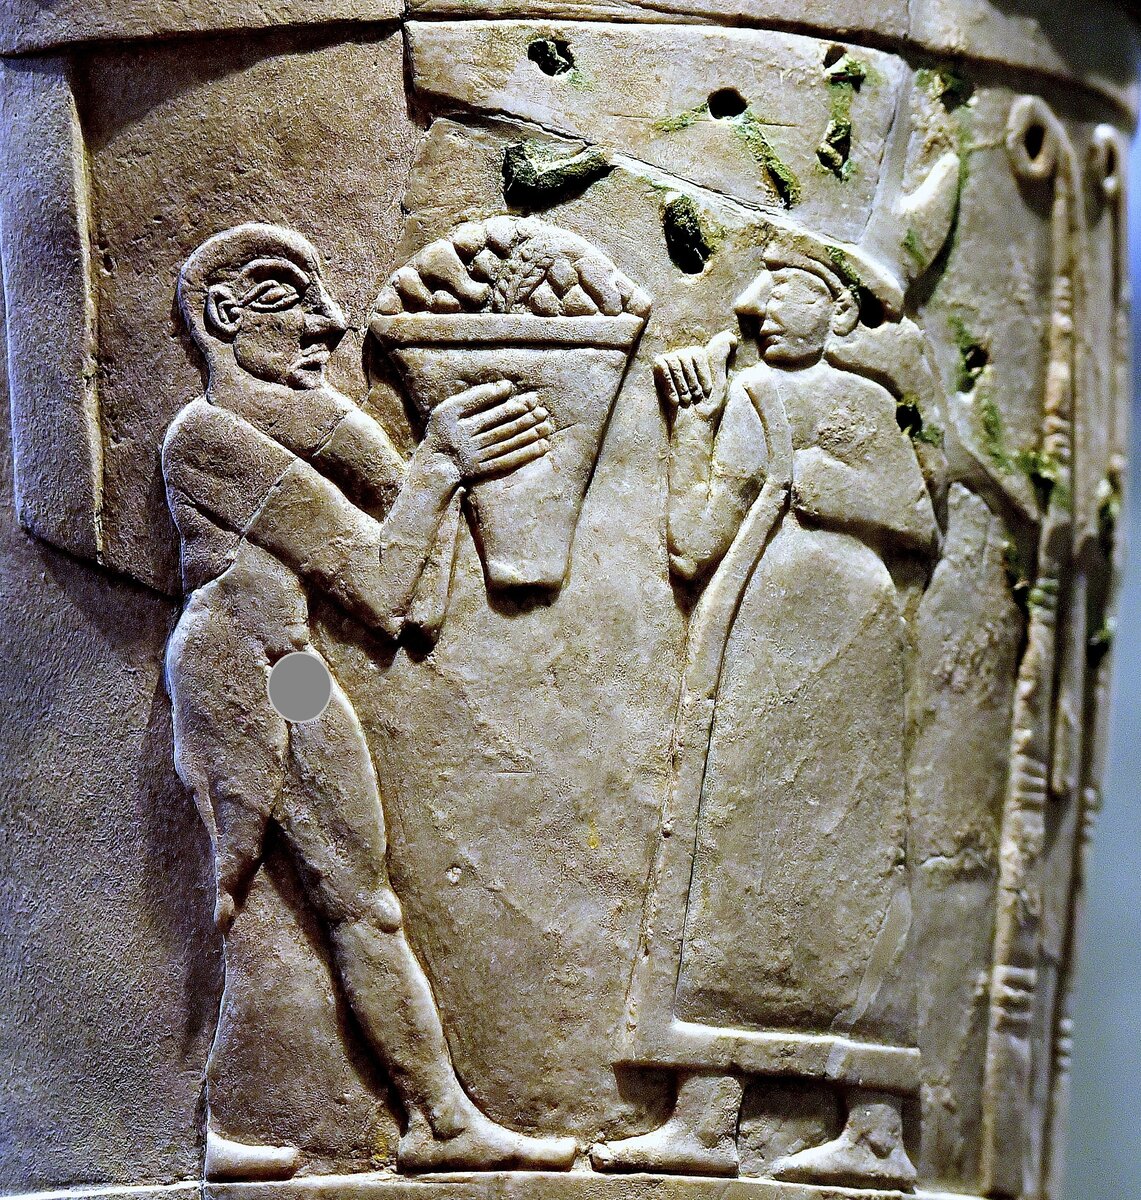 Инанна , принимающая подношения на  кувшине из города Урука, возрастом 5000 лет.  интересно что жрецы зиккуратов ходили голыми, символизируя чистоту помыслов